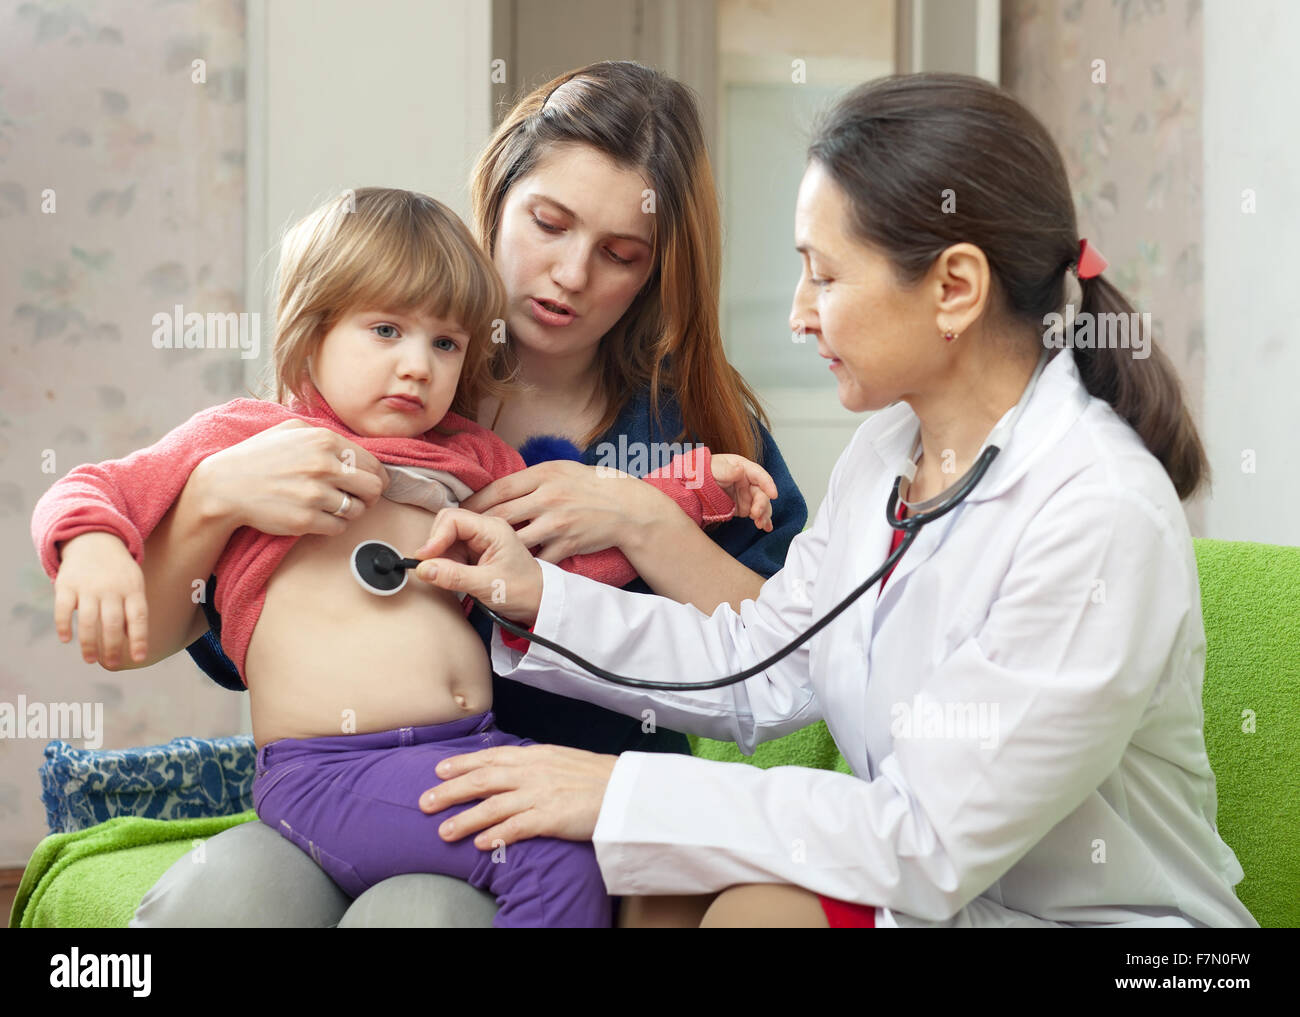 Мама пришла к врачу. Осмотр ребенка. Врач осматривает ребенка. Детский врач педиатр. Педиатры в доме ребенка.